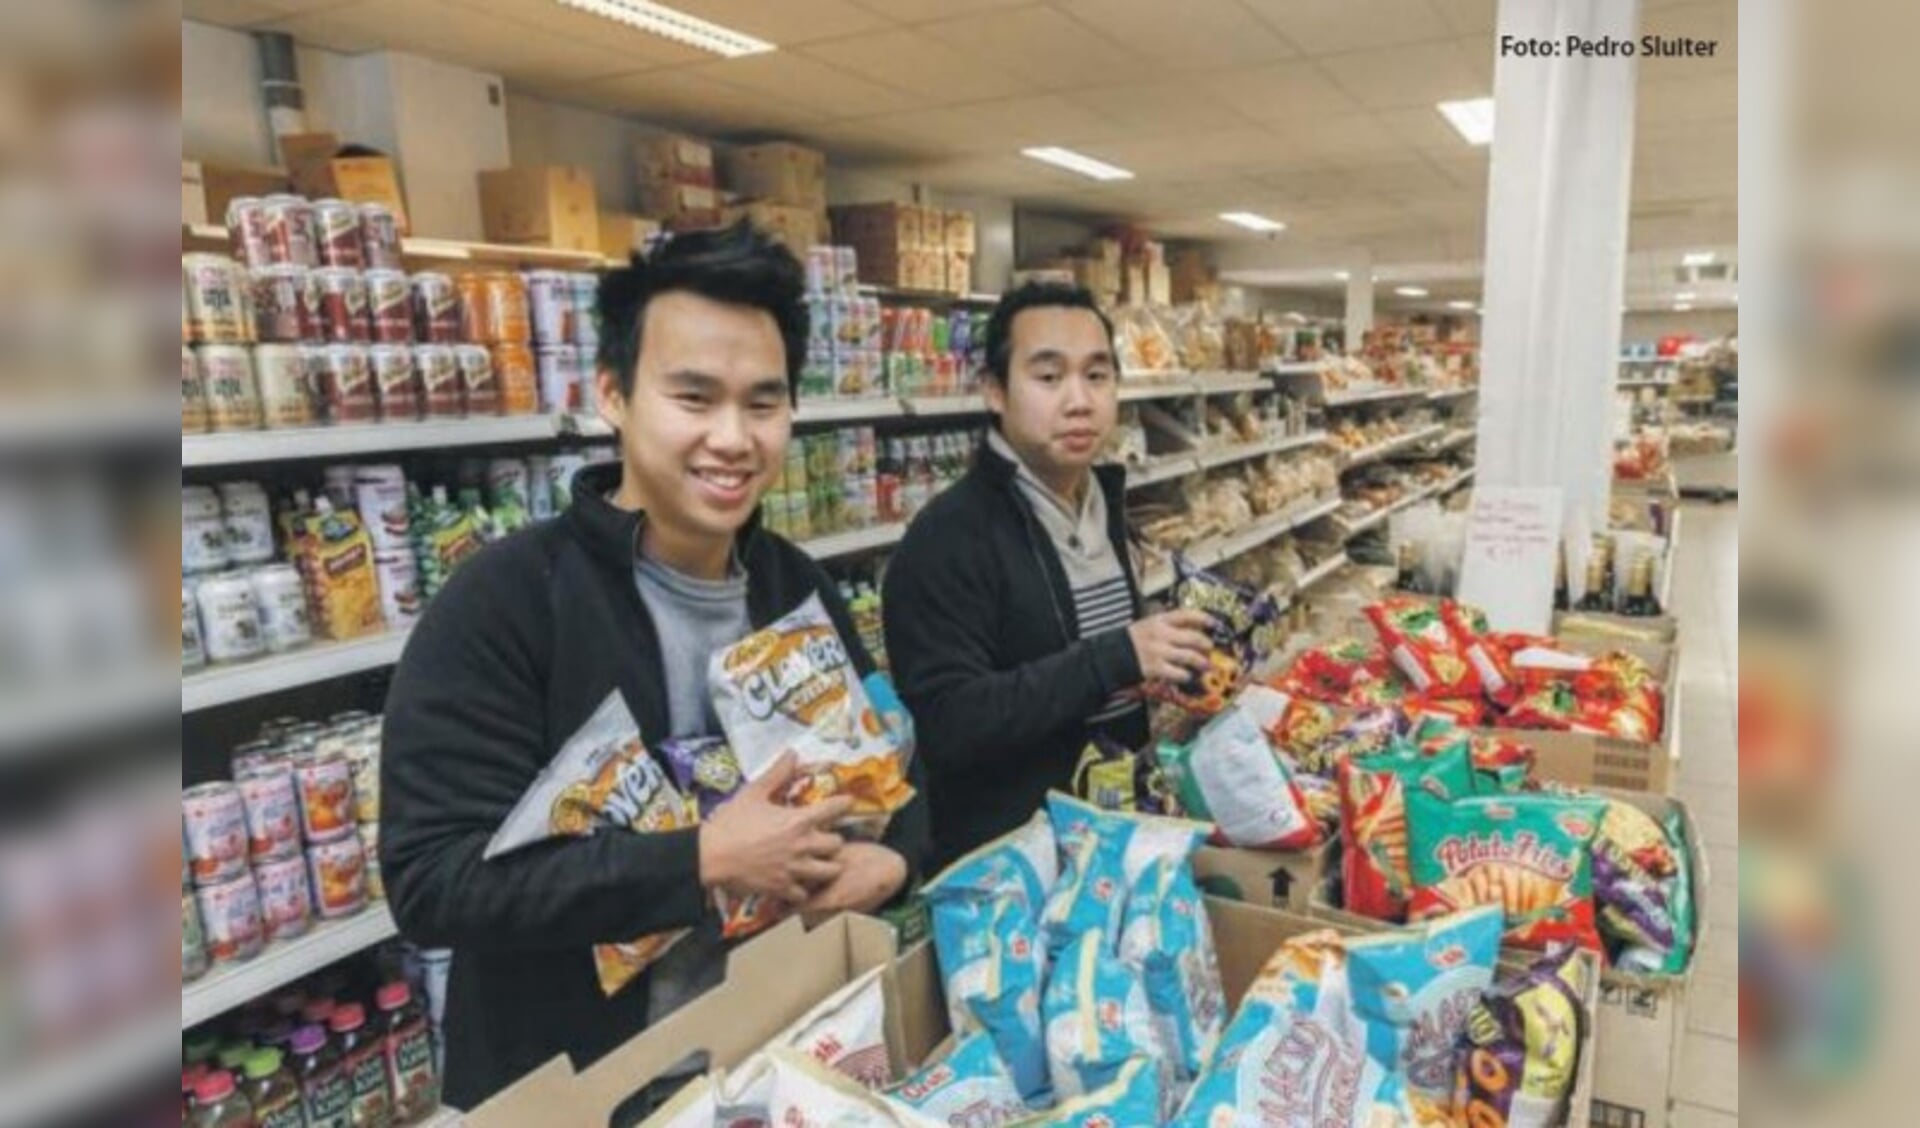  Thai en Dinh Phan; de tweeling die de Aziatische supermarkt van nieuw elan voorziet. Met een soortgelijke zaak in Leeuwarden waar hun ‘grote broer’ de leiding heeft.